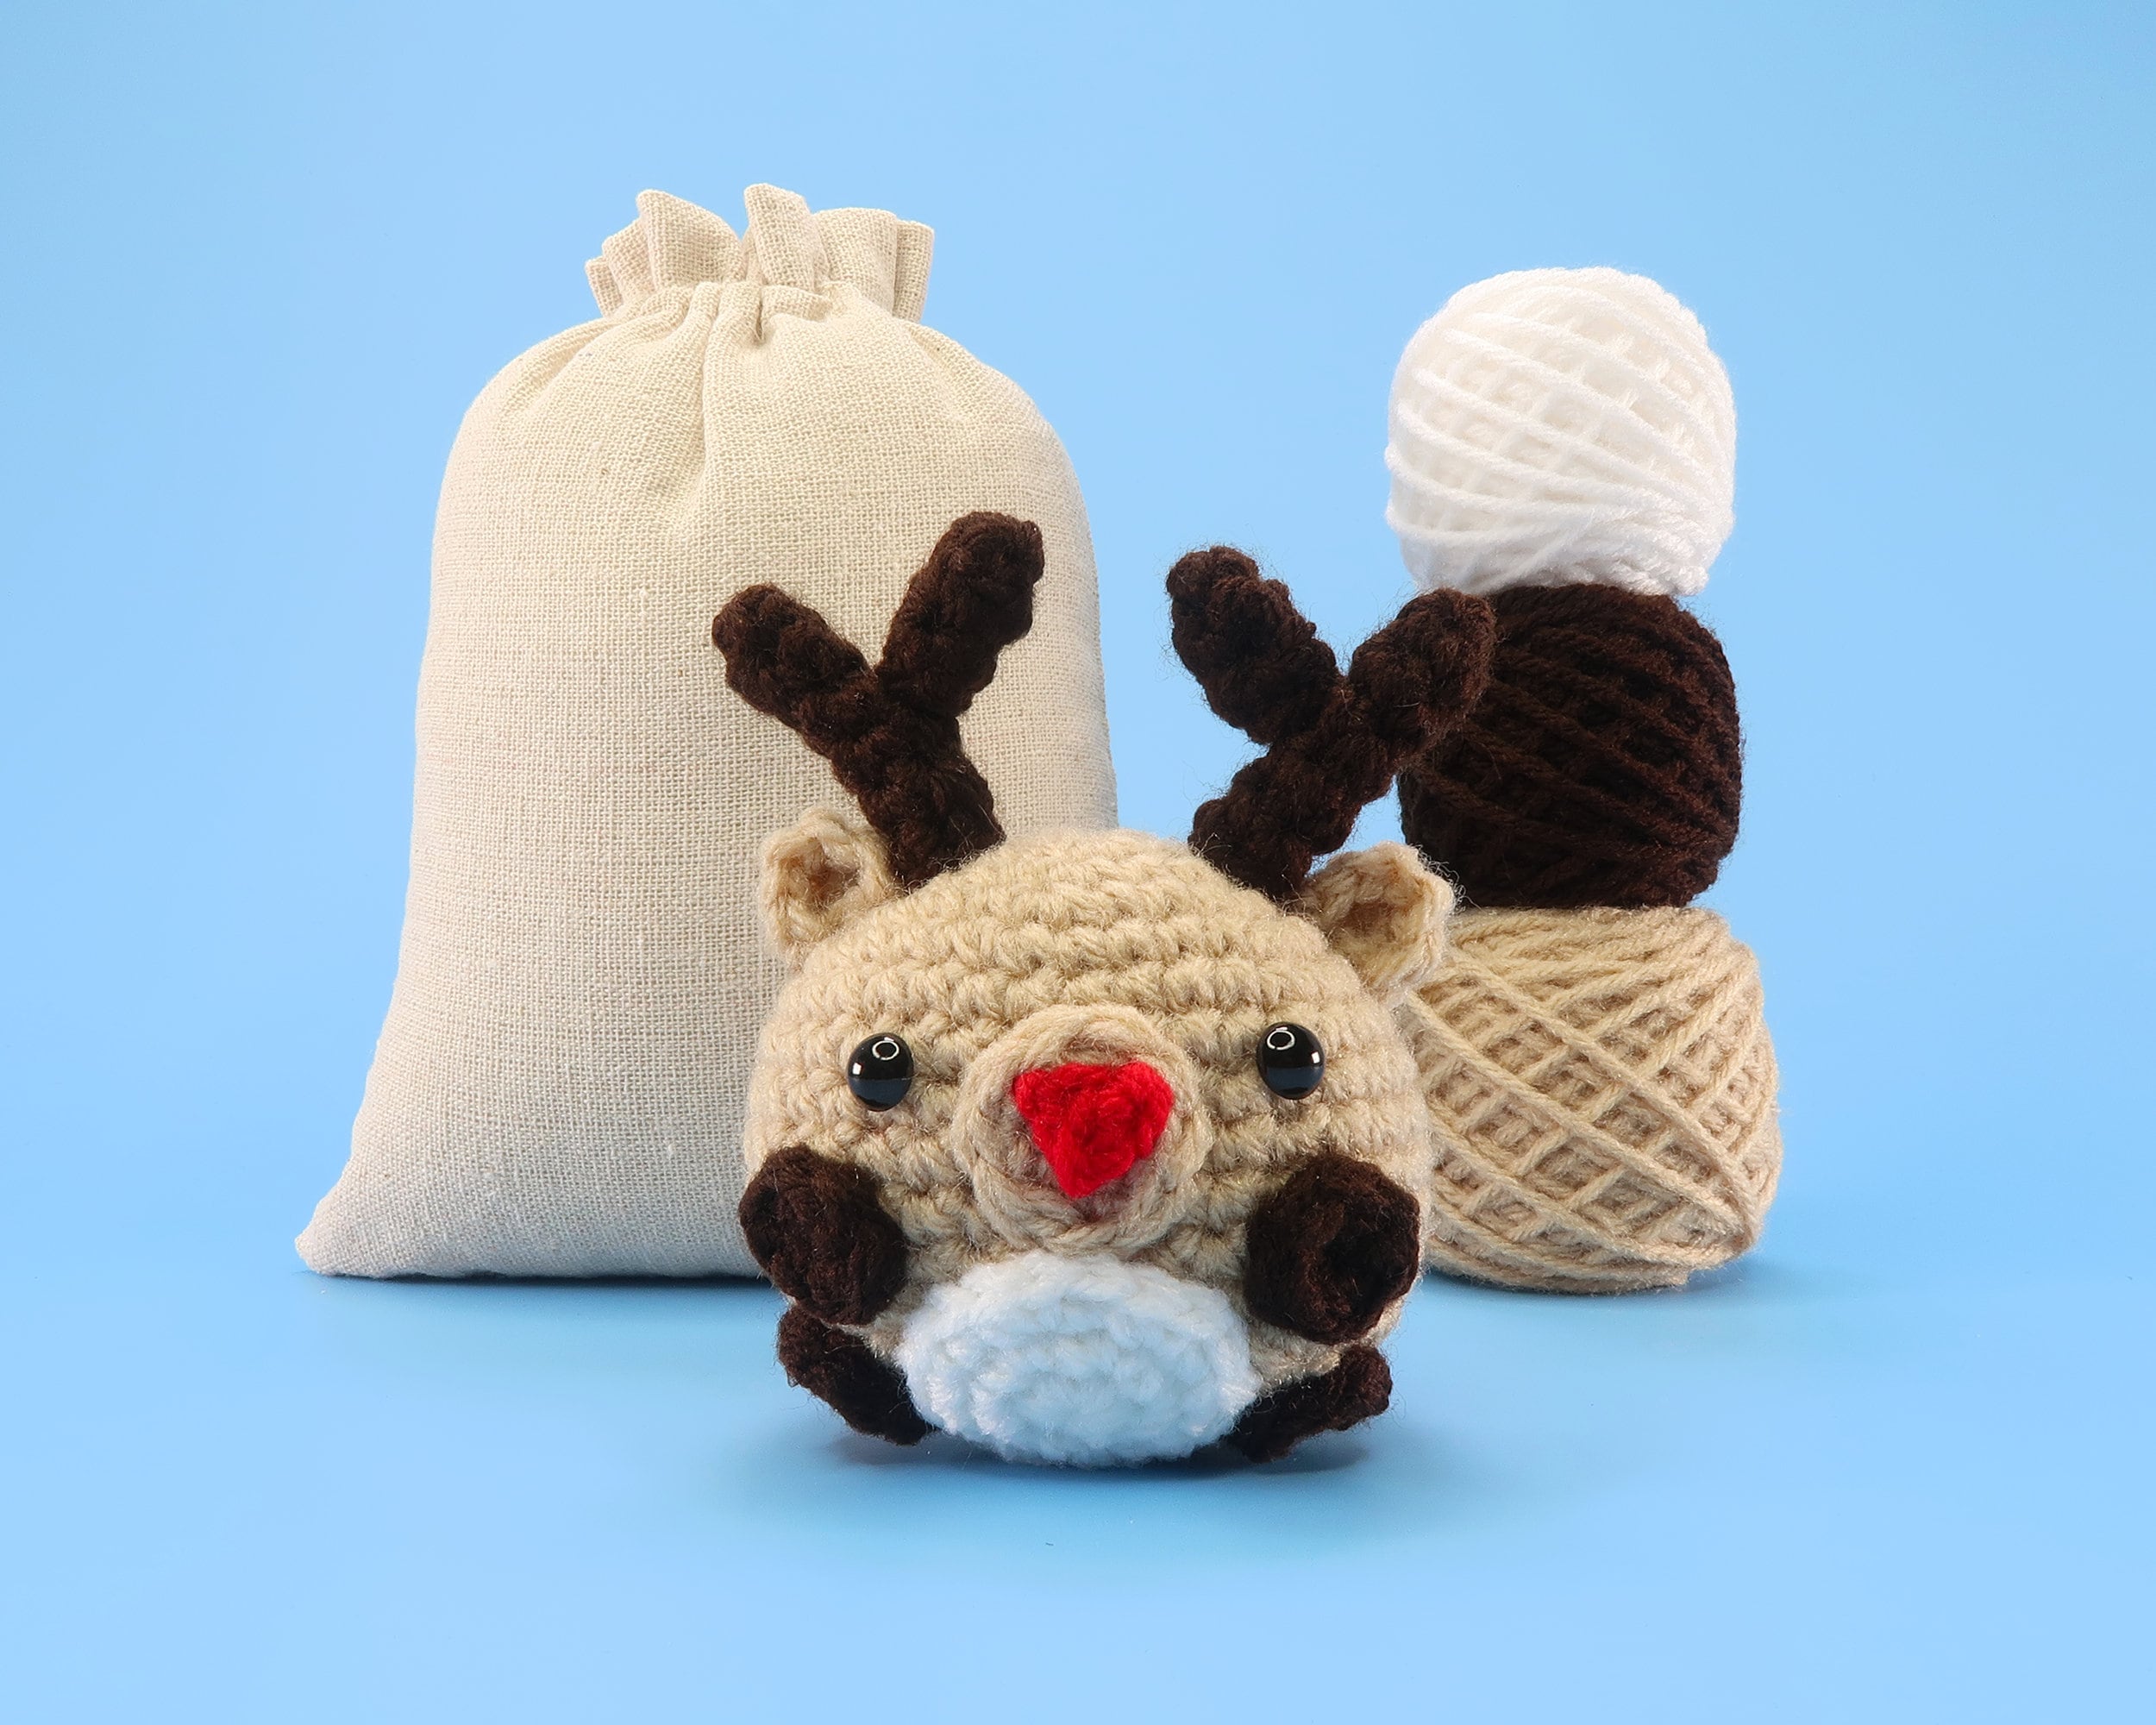 Beginner Red Panda Crochet Kit Easy Crochet Starter Kit Crochet Animals Kit  Amigurumi Kit Crochet Gift Animal Crochet Store 